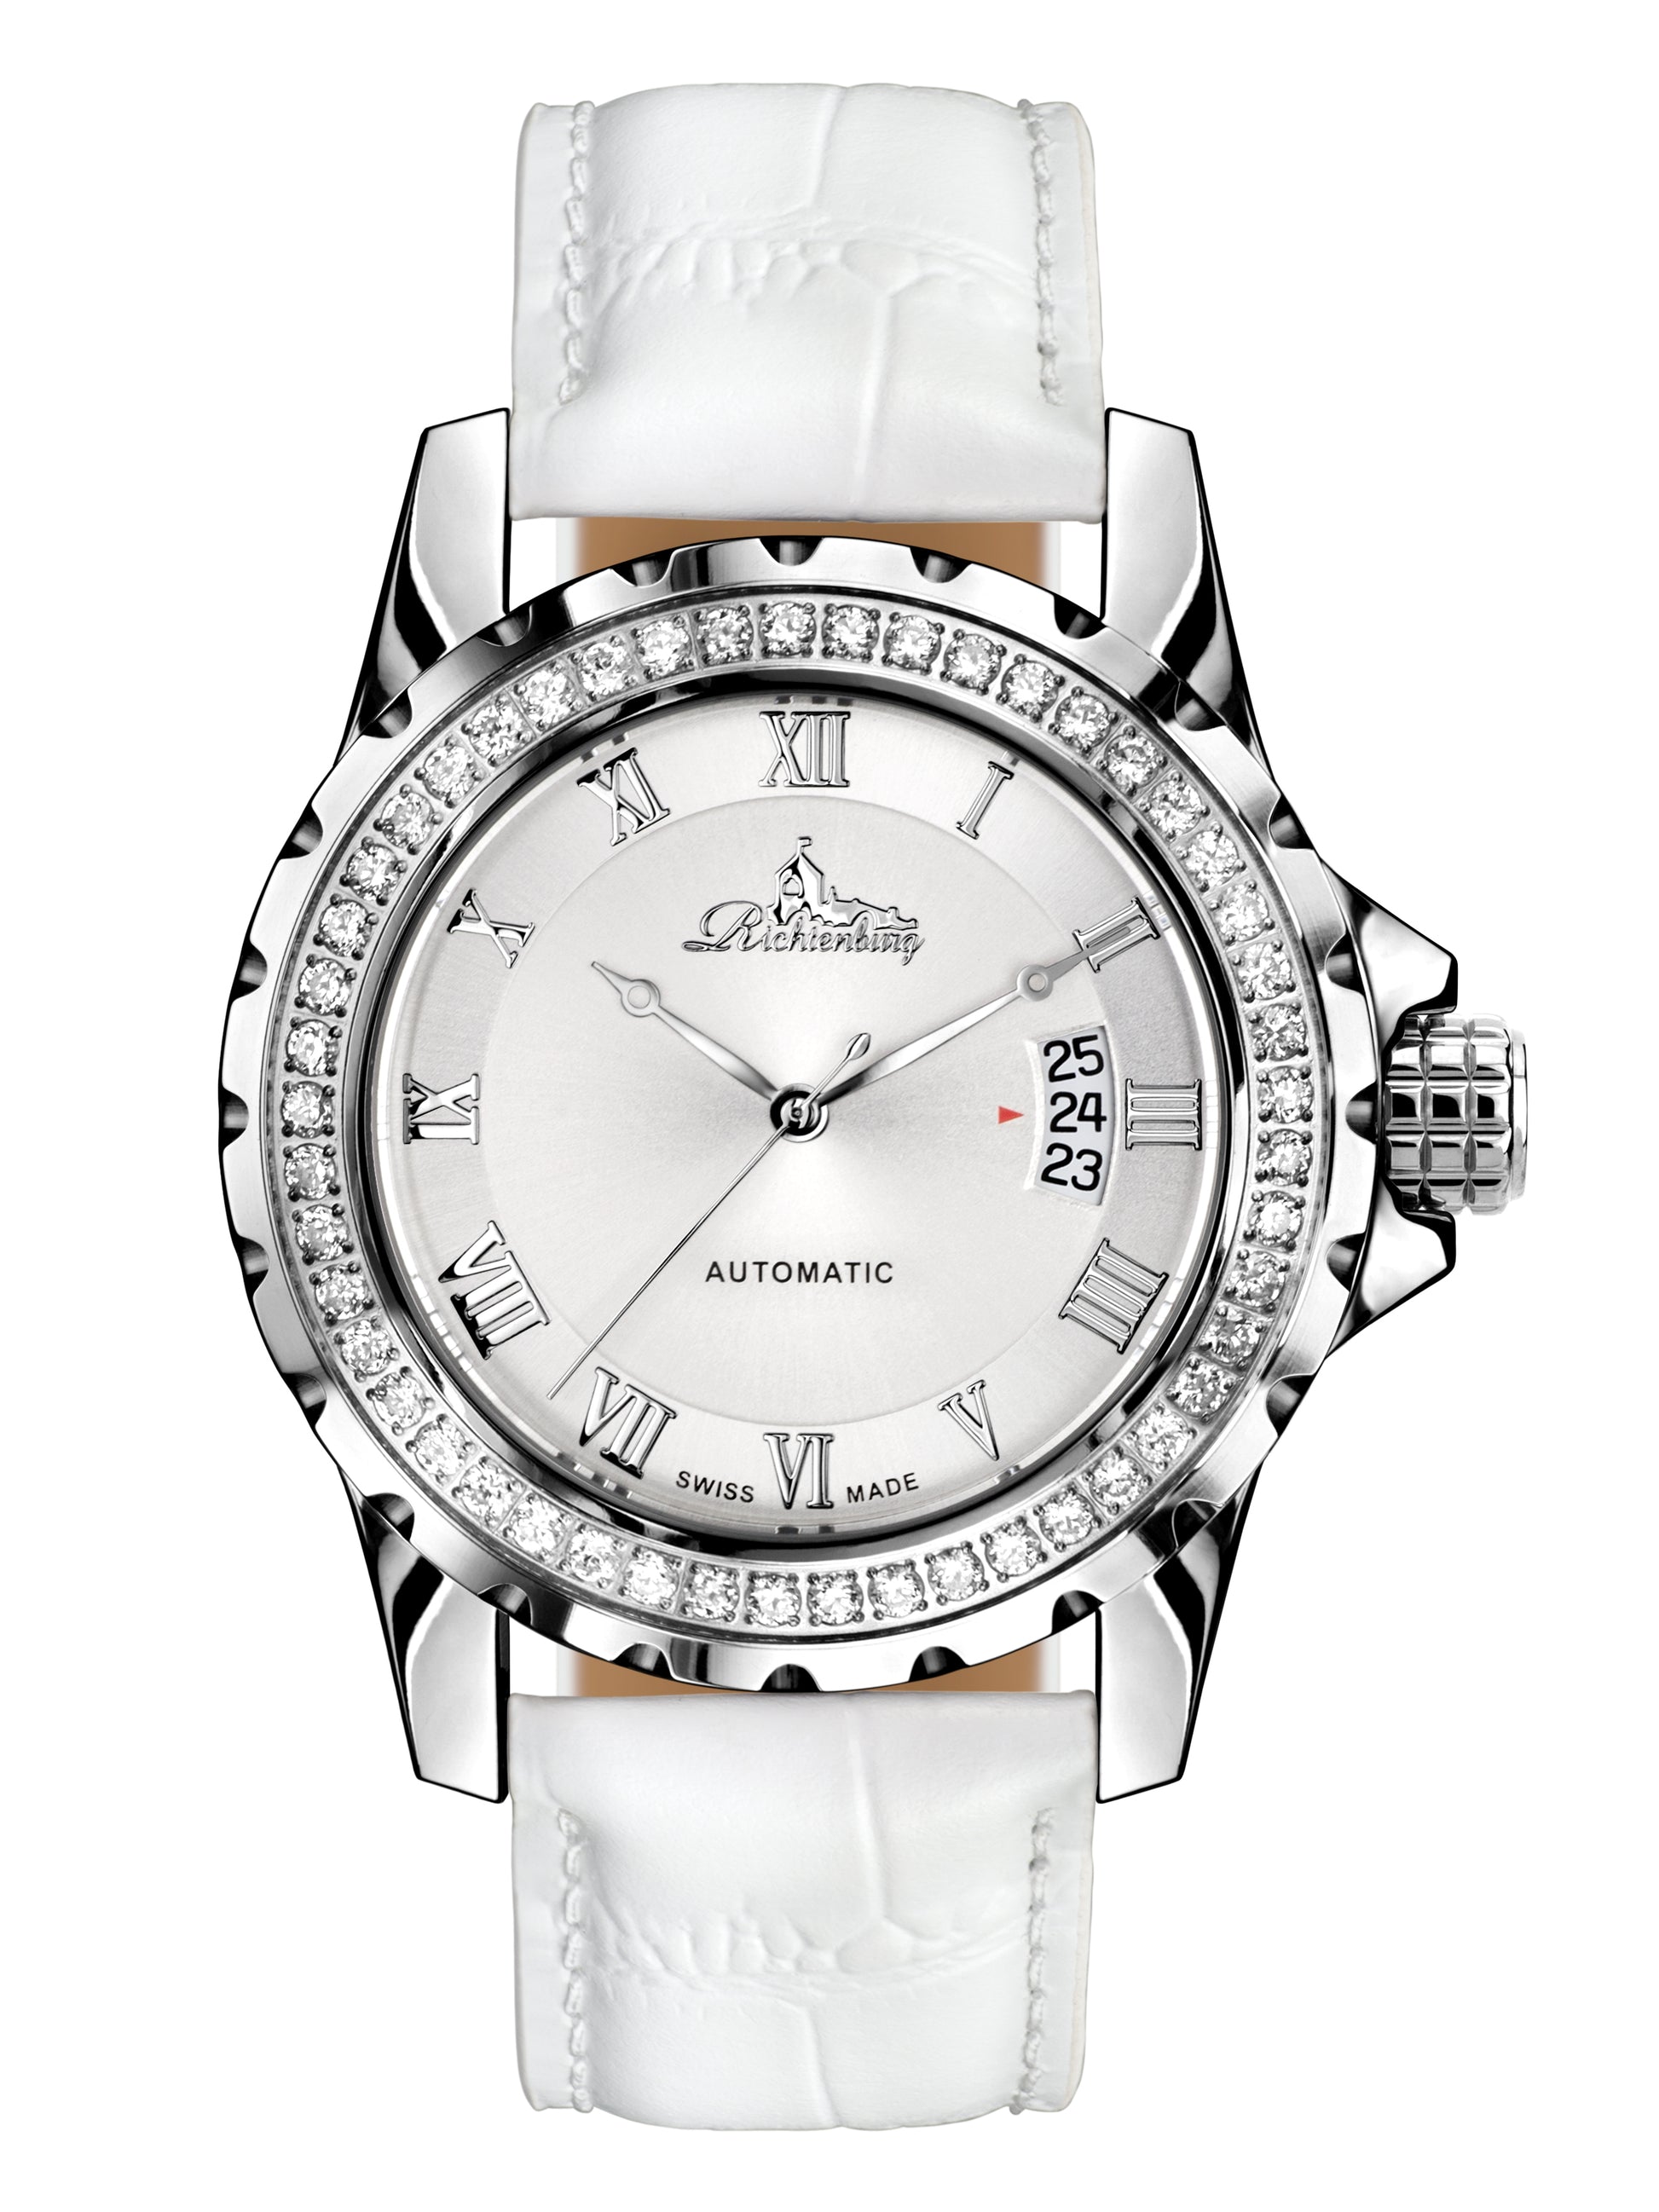 Automatic watches — Clasica — Richtenburg — steel white II